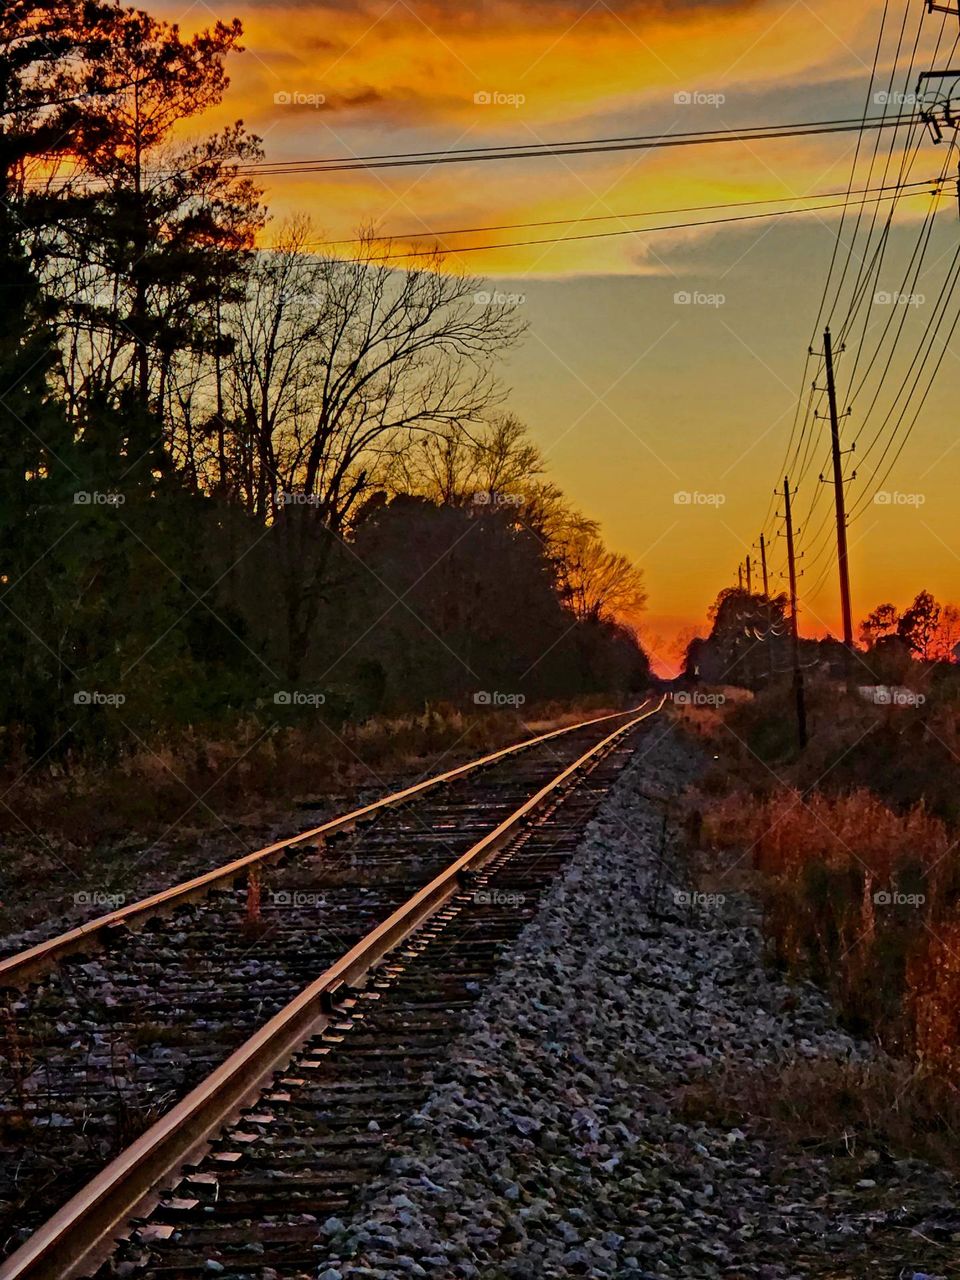 Sunset on railroad tracks